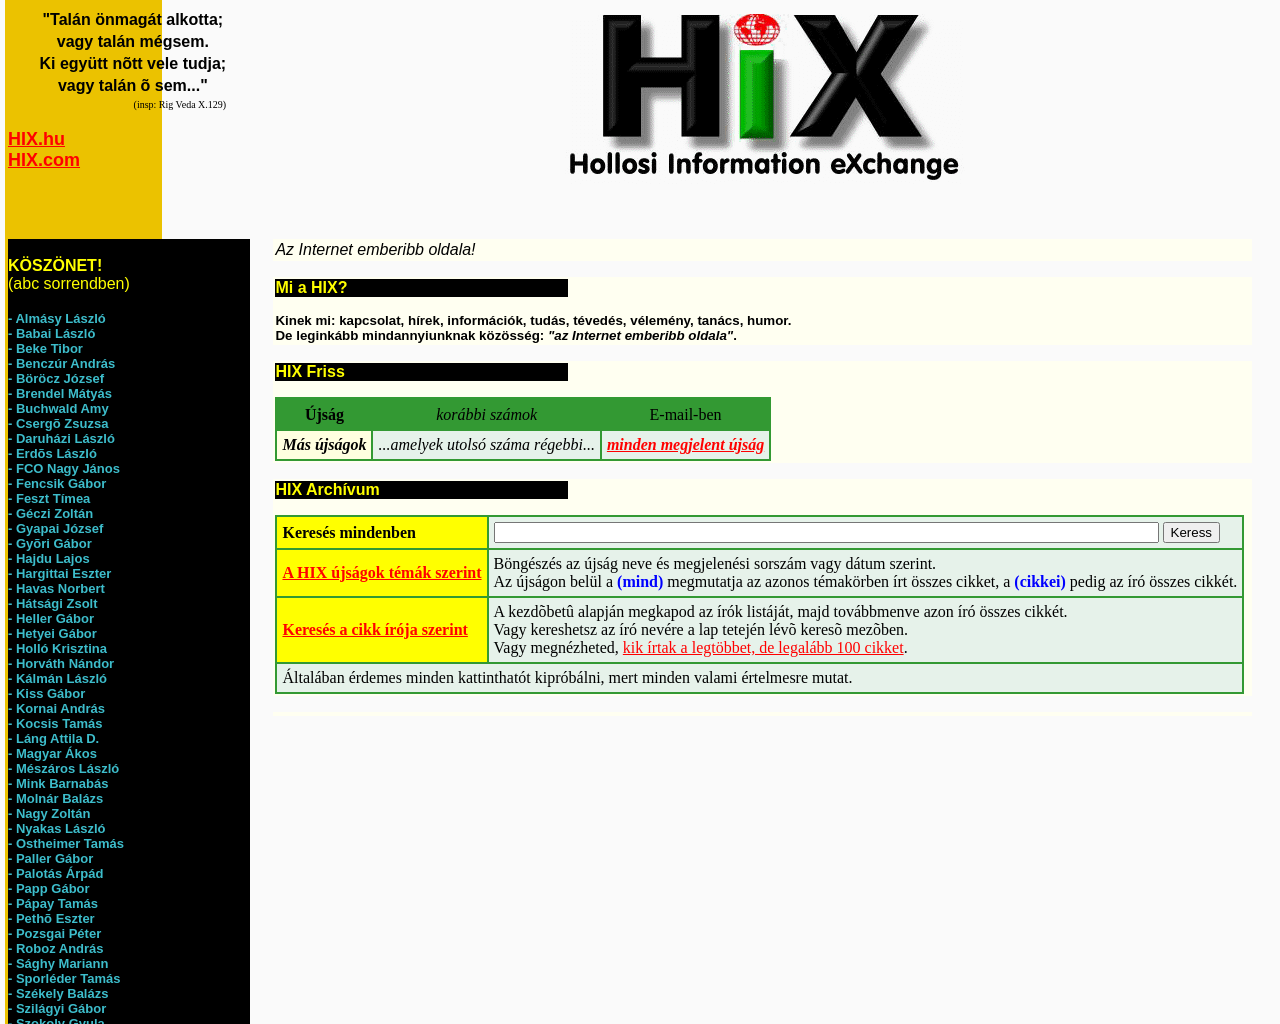 hix.com